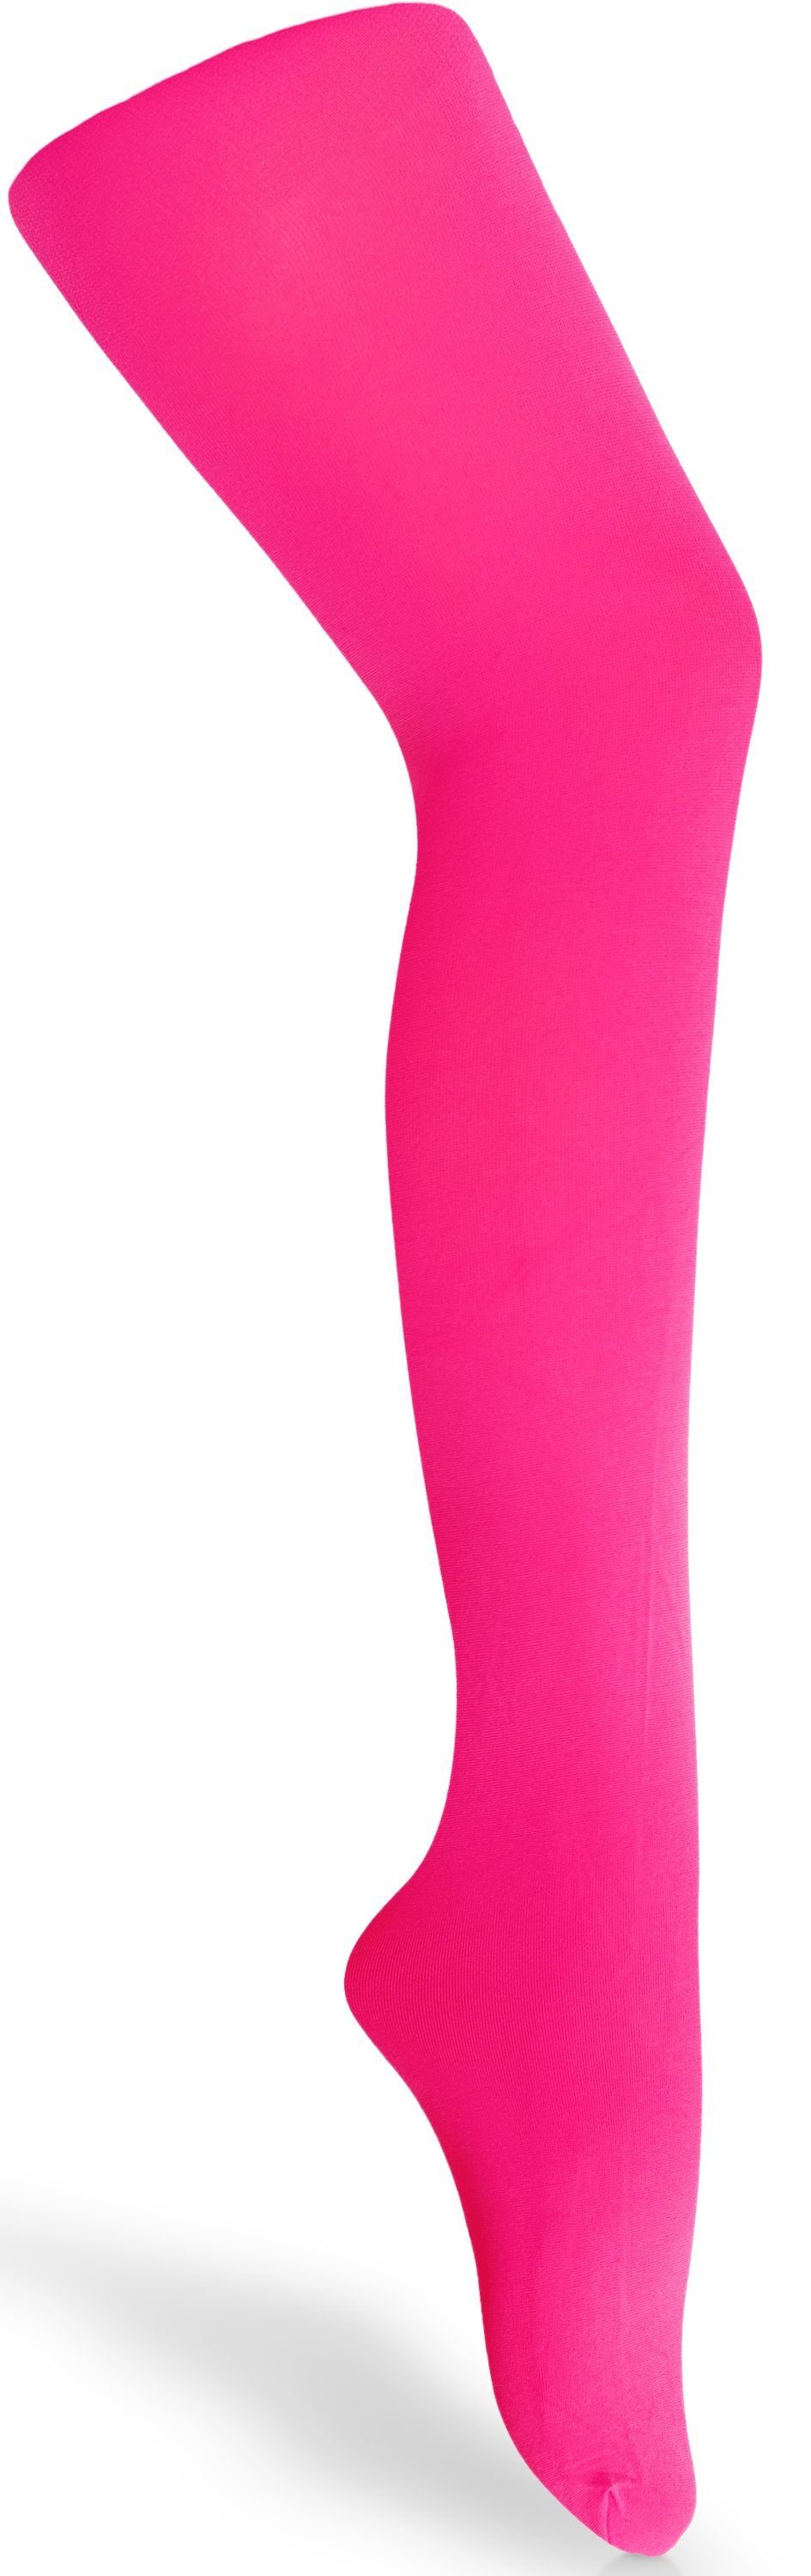 Merry Style Strumpfhose Kinder Strumpfhose für Mädchen Microfaser 60 DEN 60 DEN (1 St) Neon Rosa